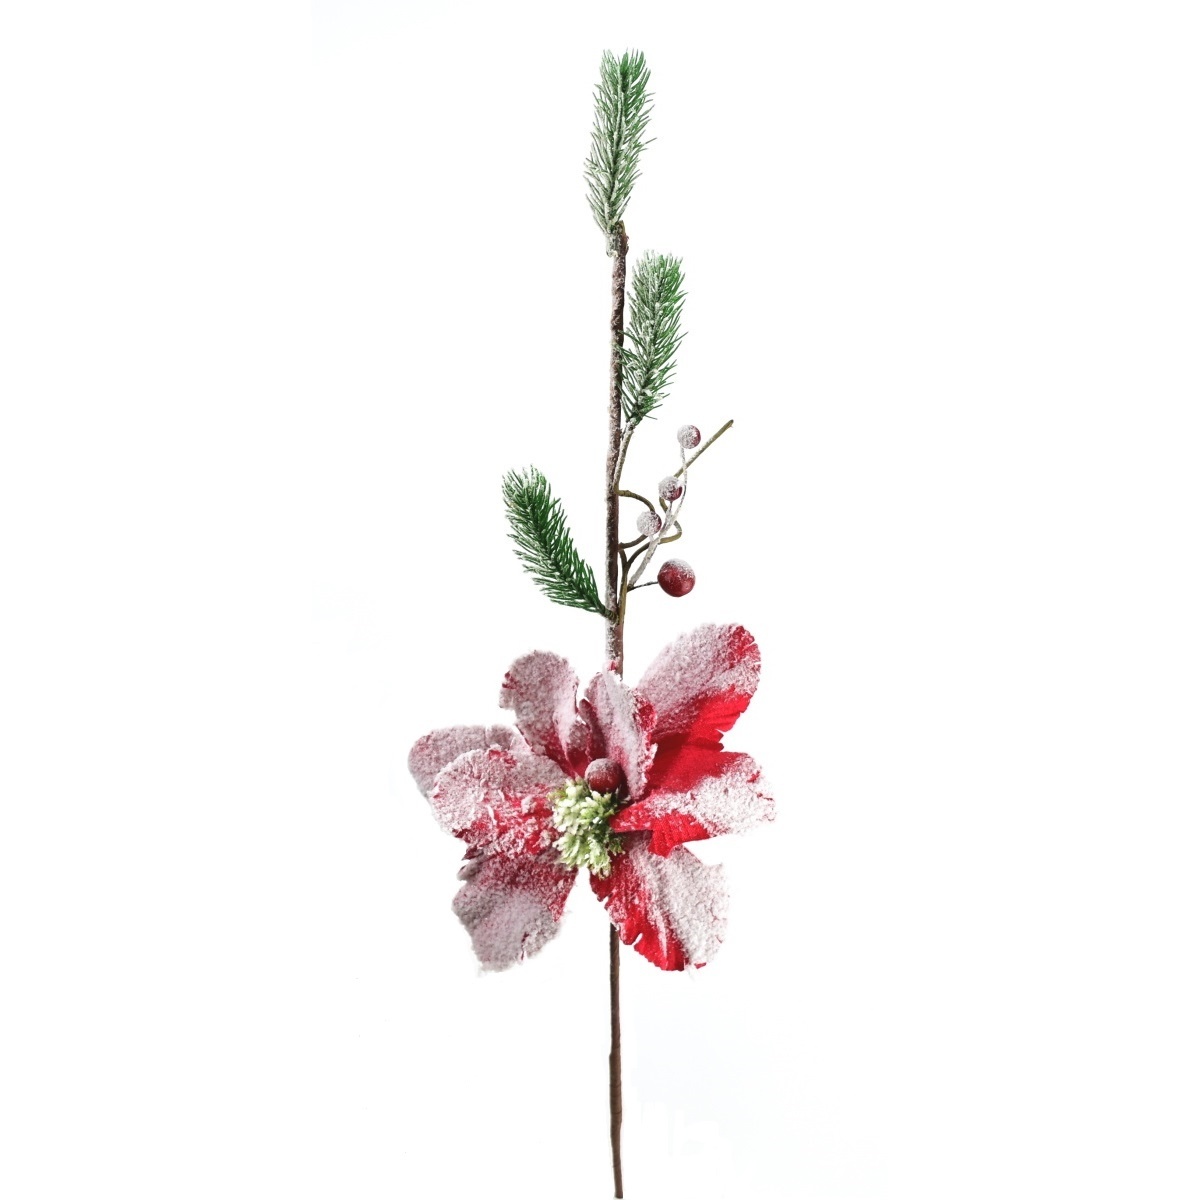 Dekorační květina Zasněžená magnolie, 60 cm